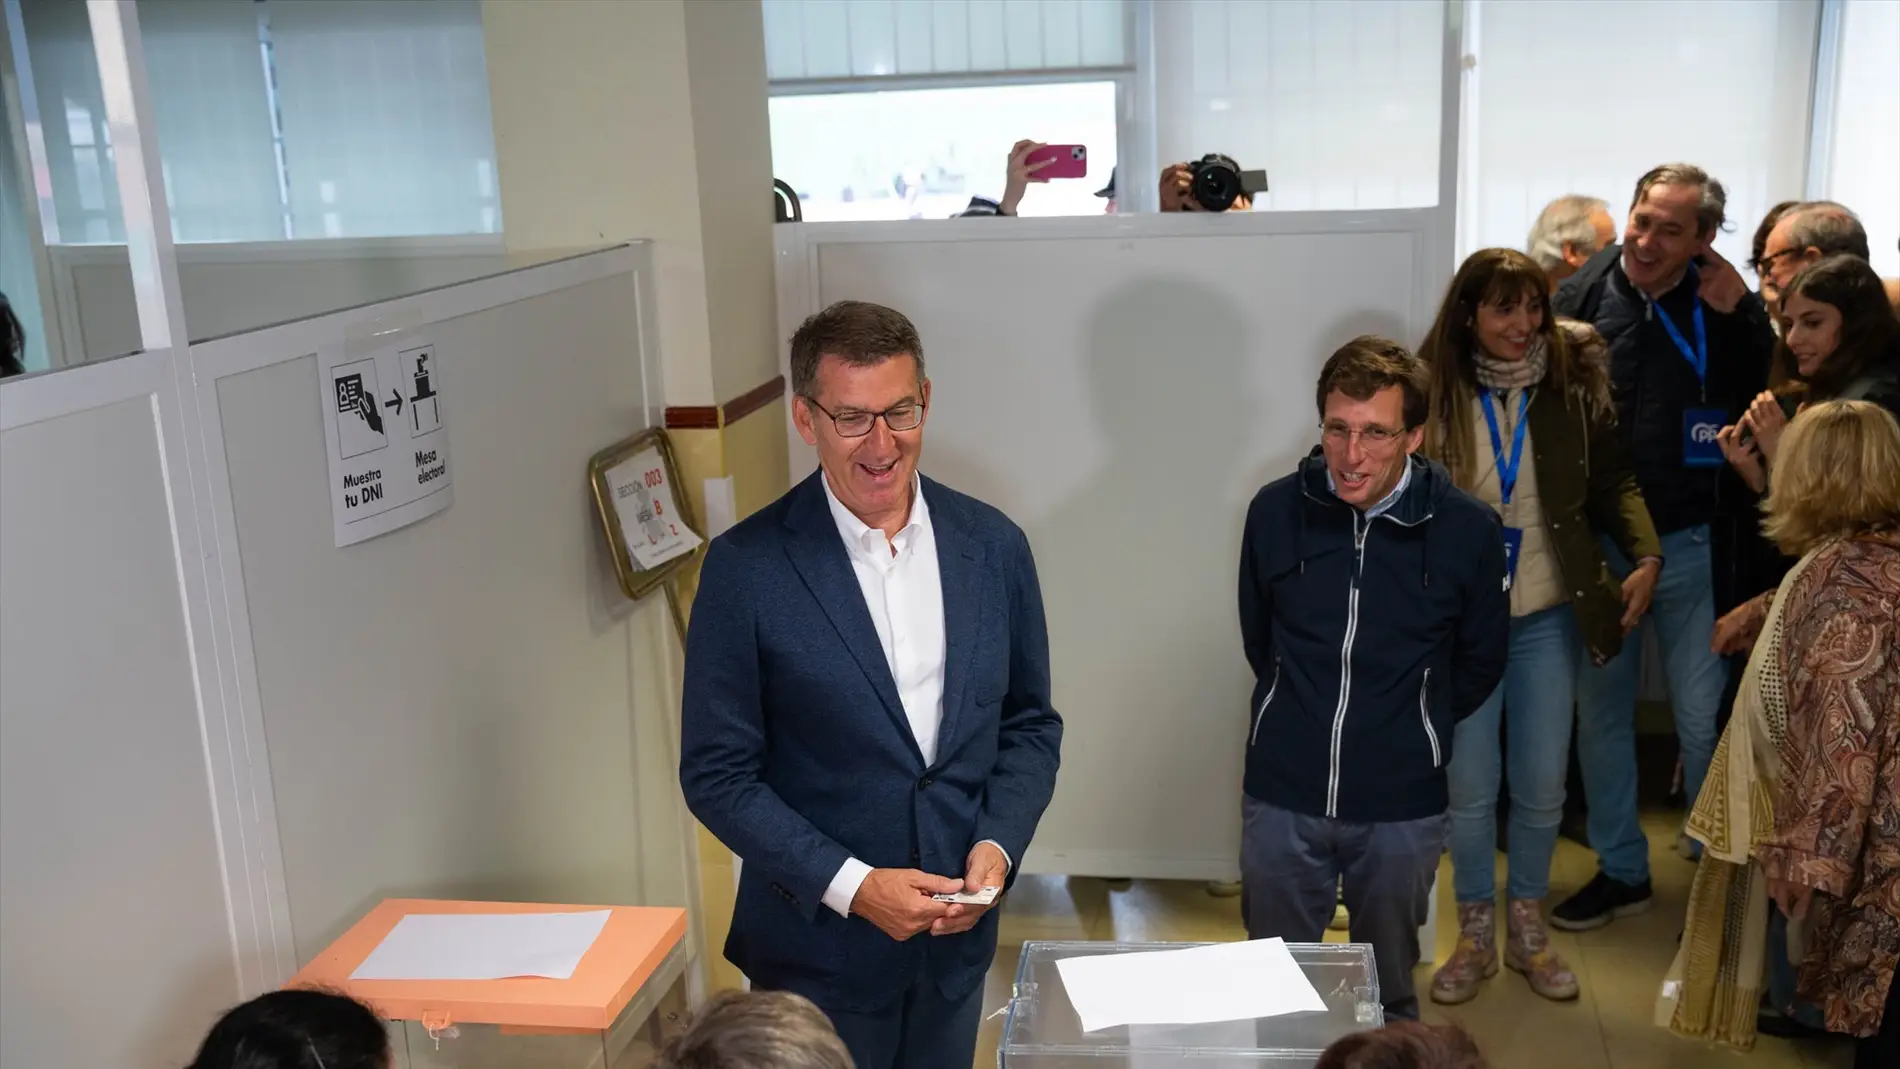 Feijóo pide votar de forma "masiva" y defiende la fortaleza del sistema electoral español